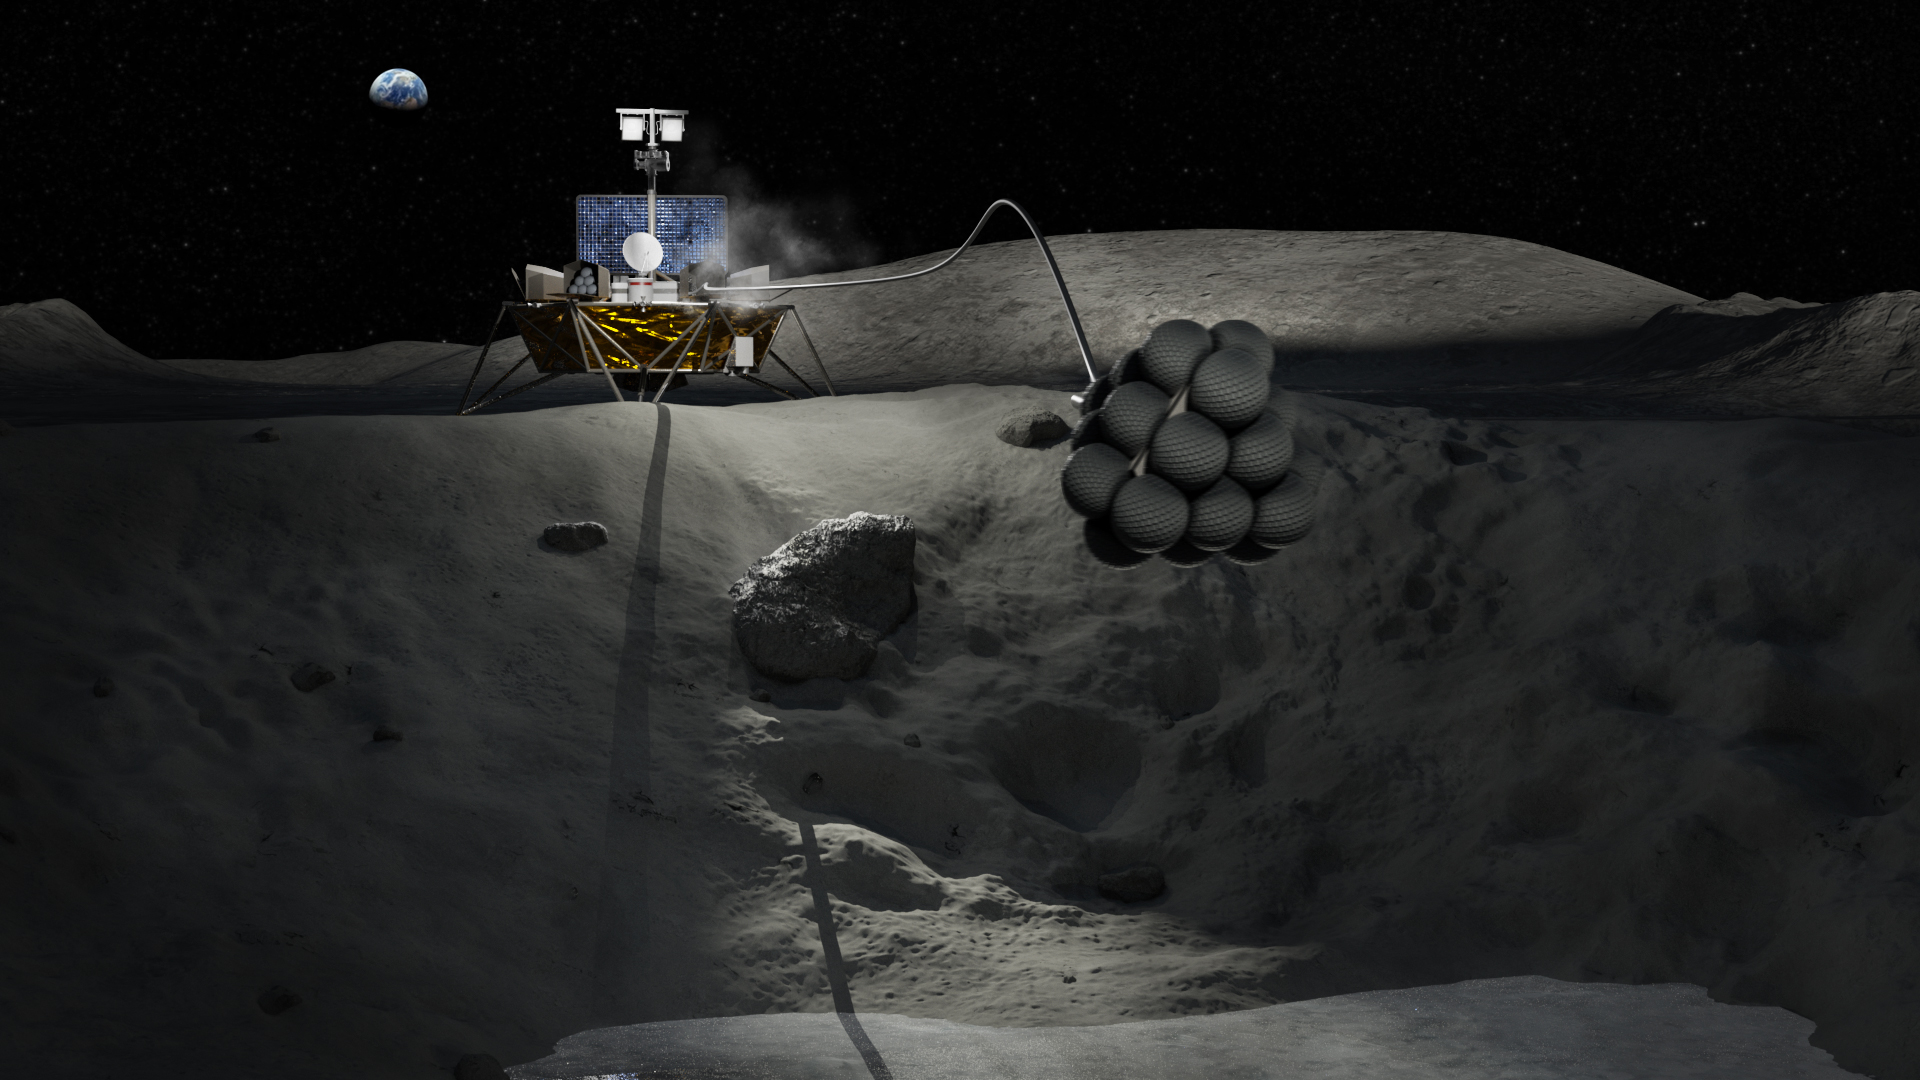 Illustration of a lunar science mission and lander concept